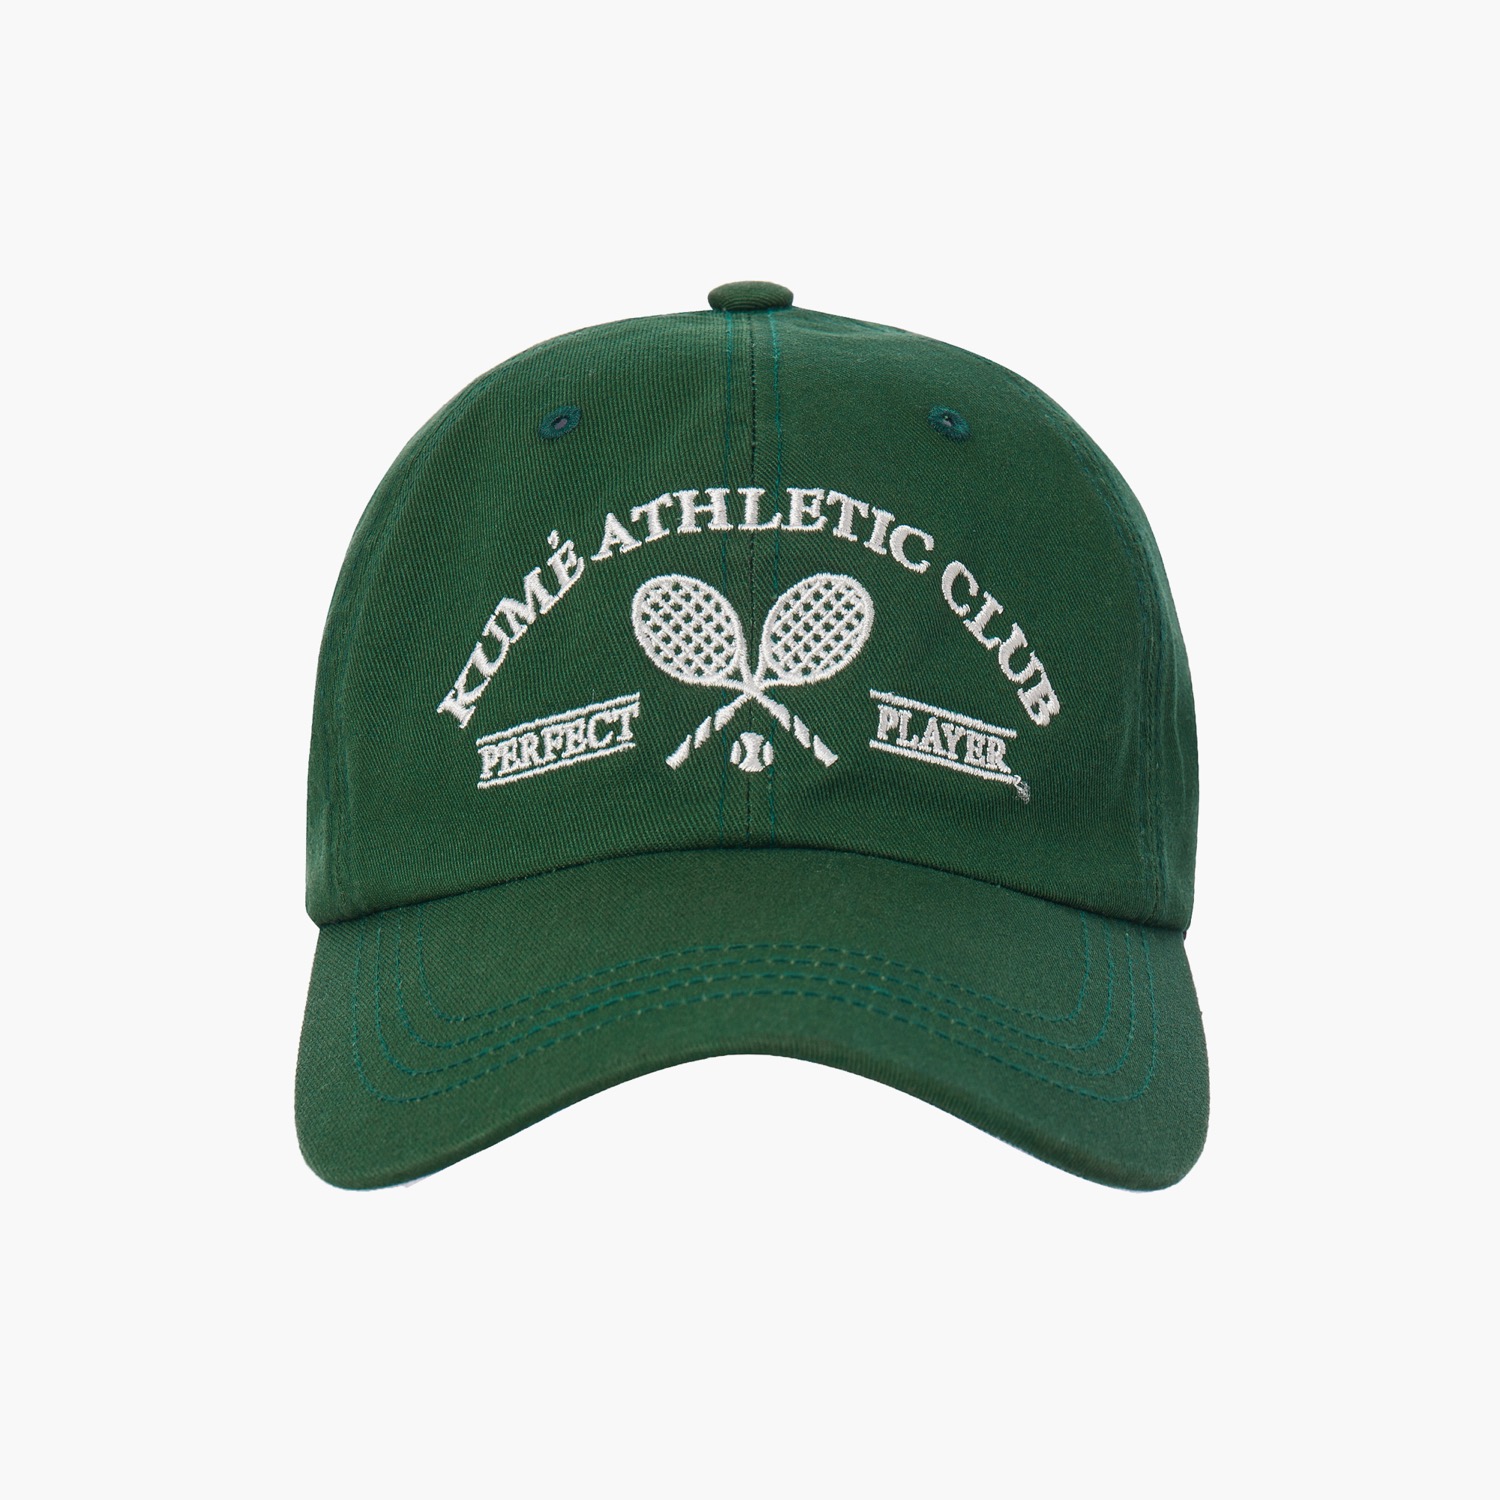 TENNIS BALL CAP, GREEN